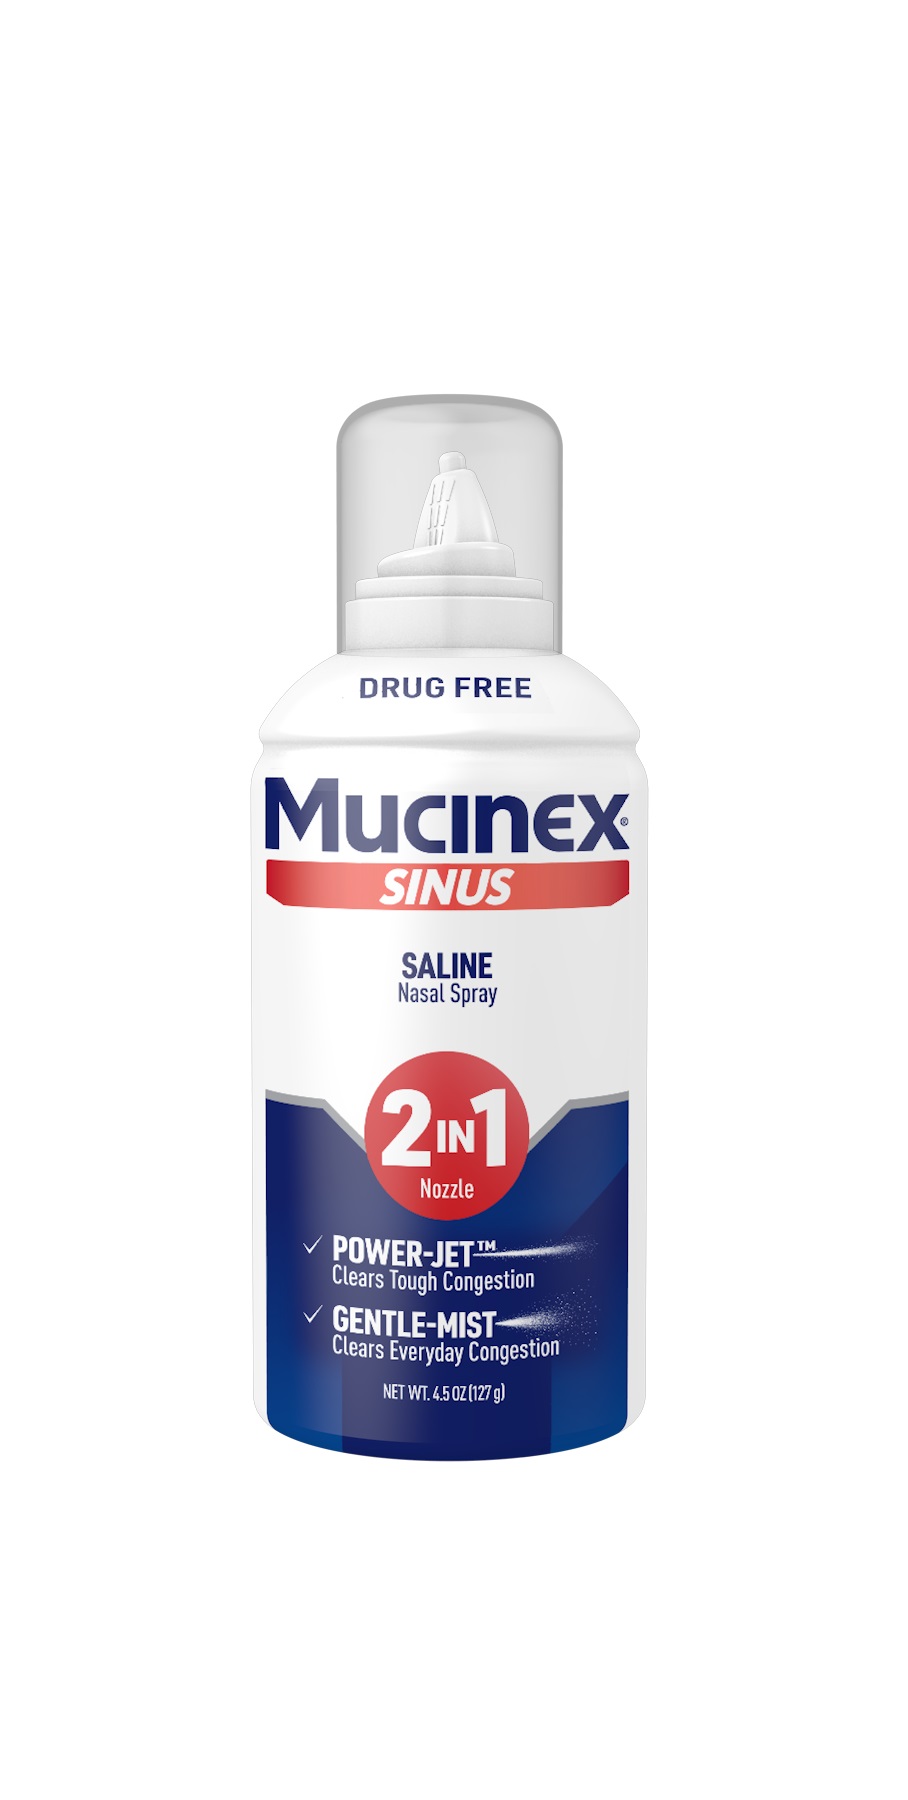 MUCINEX Sinus Saline Nasal Spray